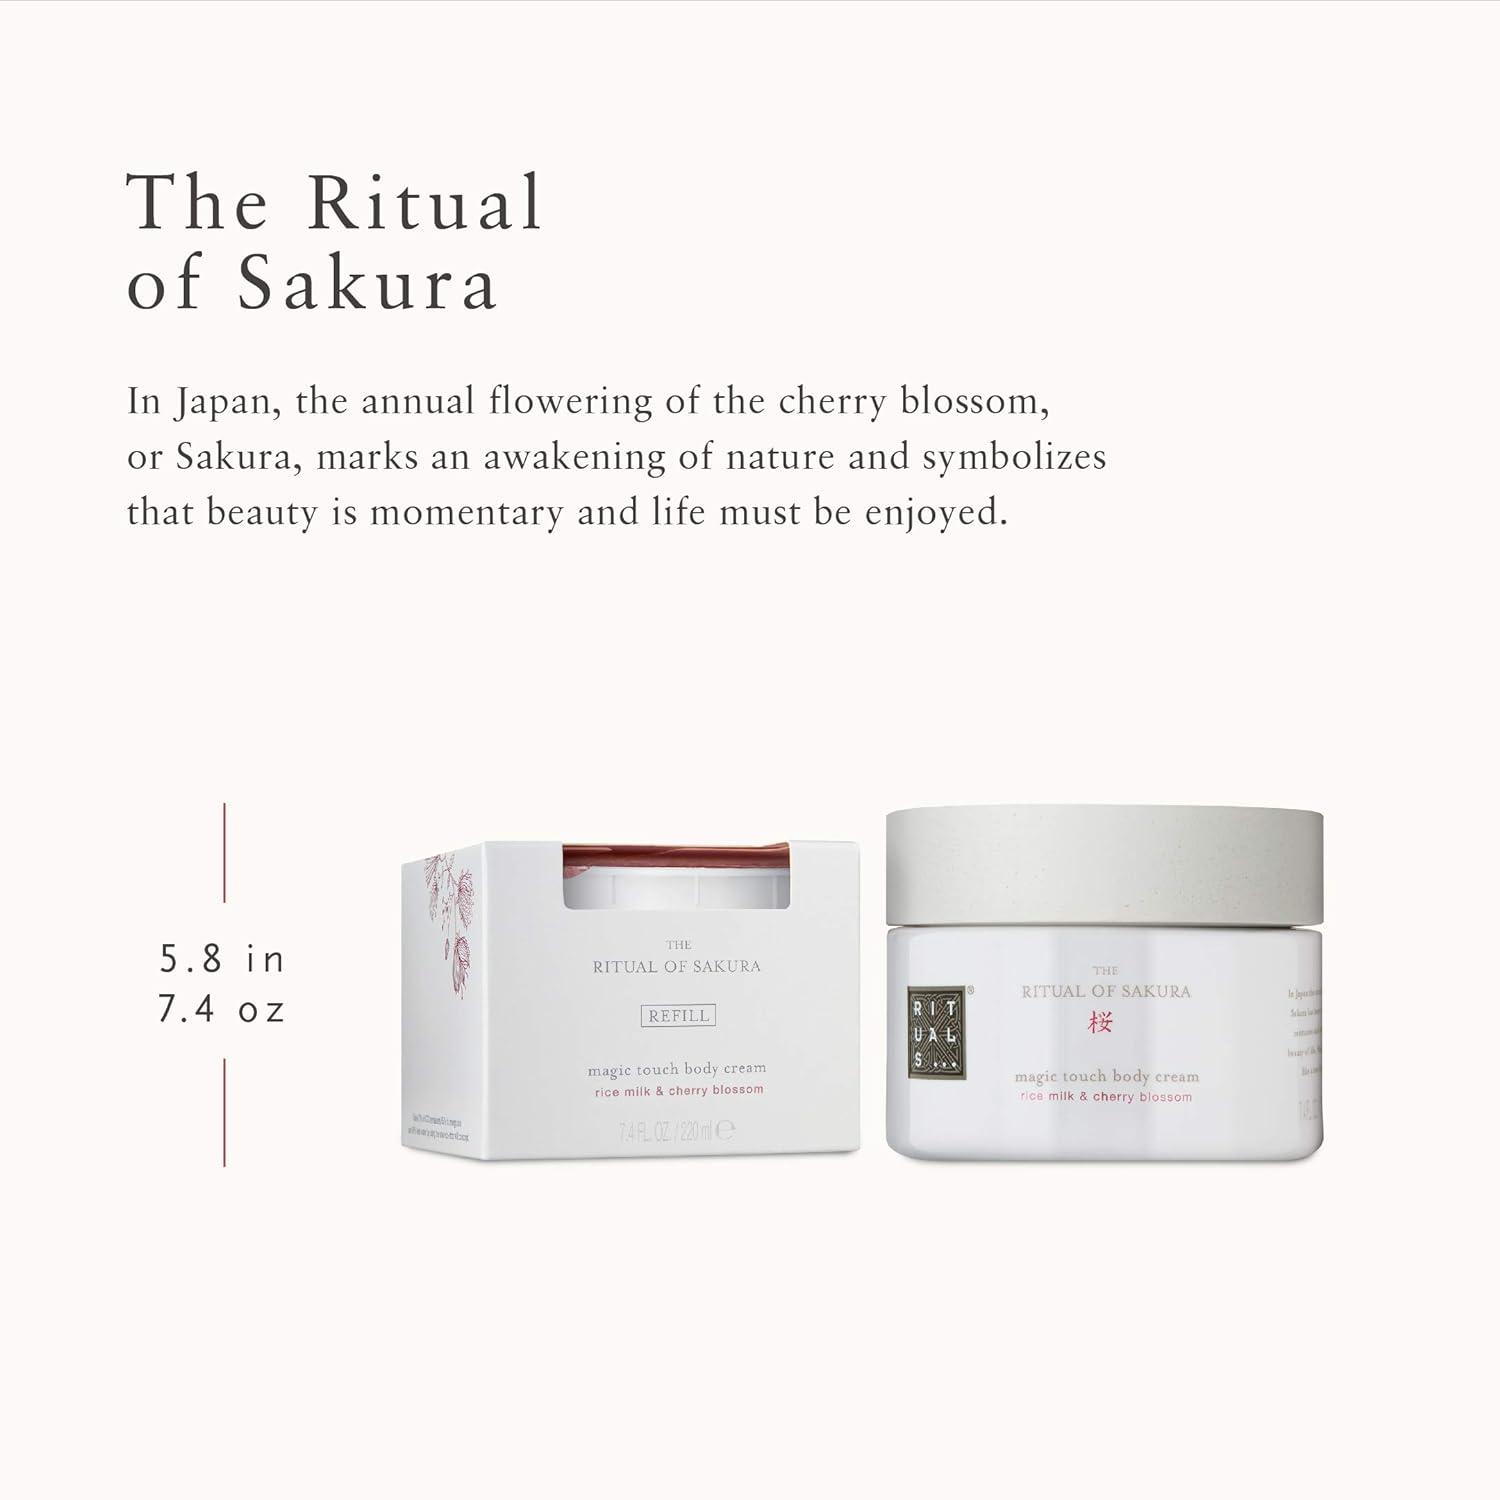 Rituals Sakura Whipped Body Cream 220ml & Refill